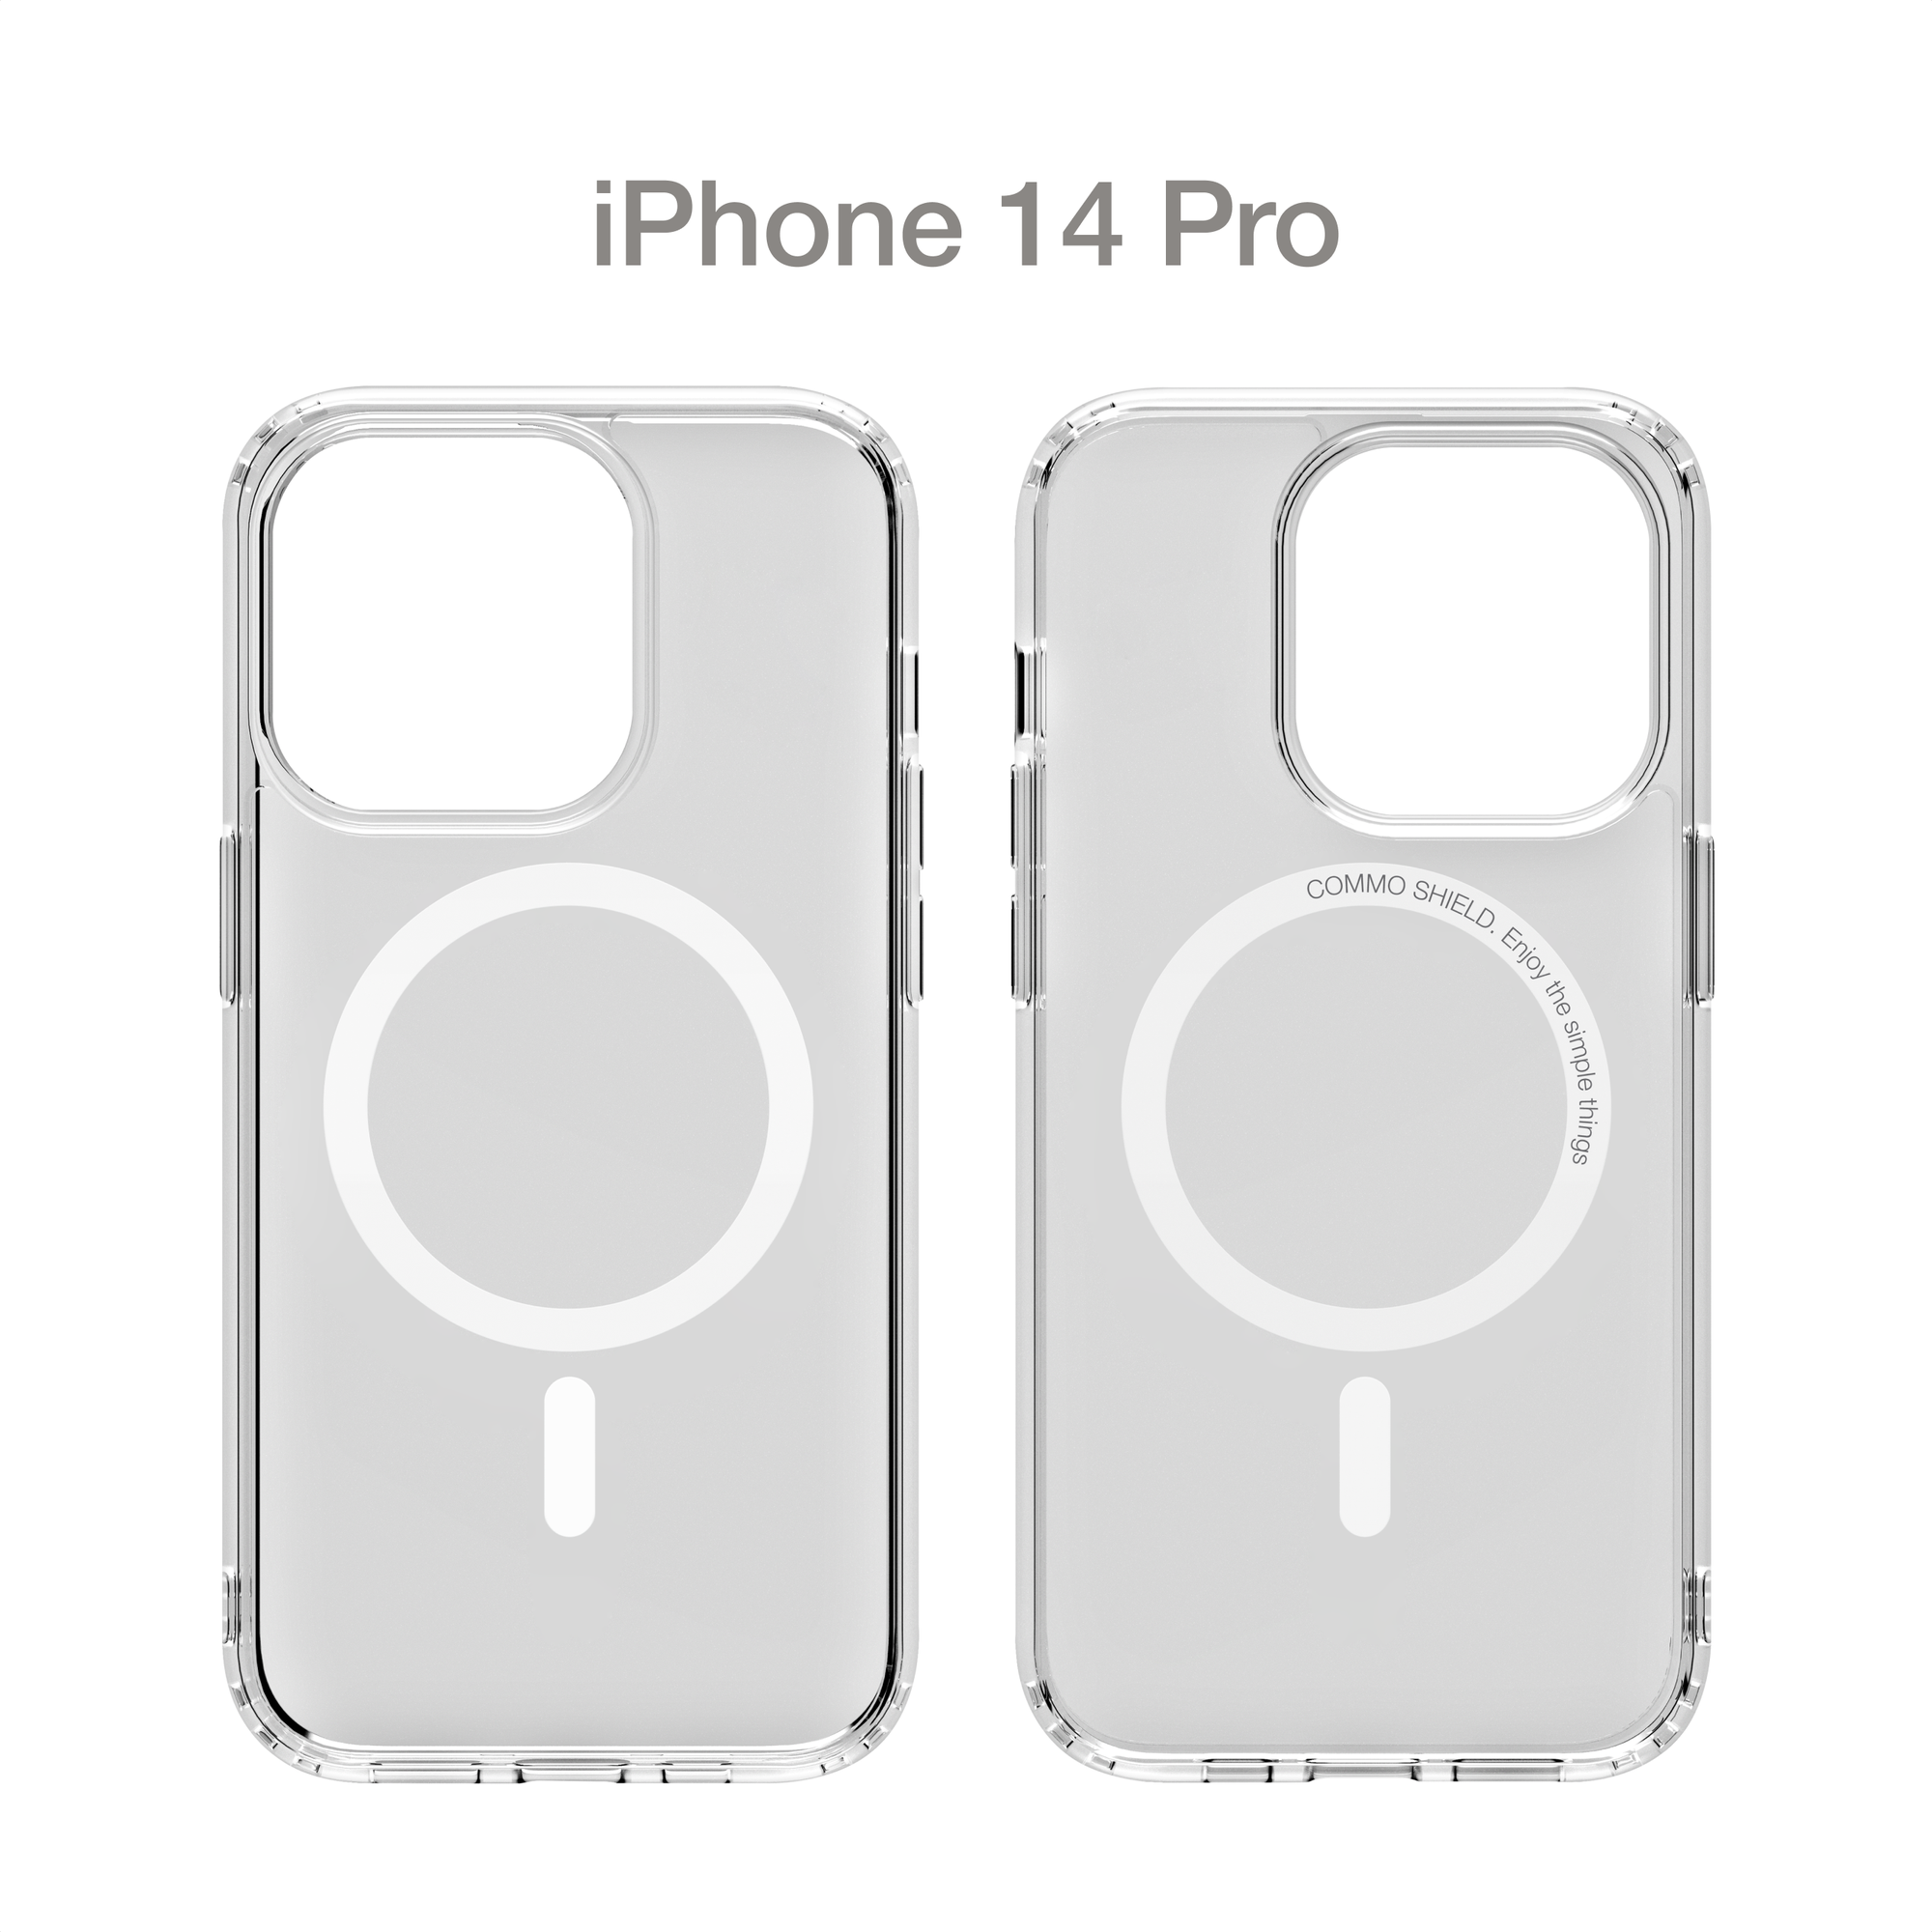 Прозрачный чехол COMMO Shield Case для iPhone 14 Pro с поддержкой беспроводной зарядки